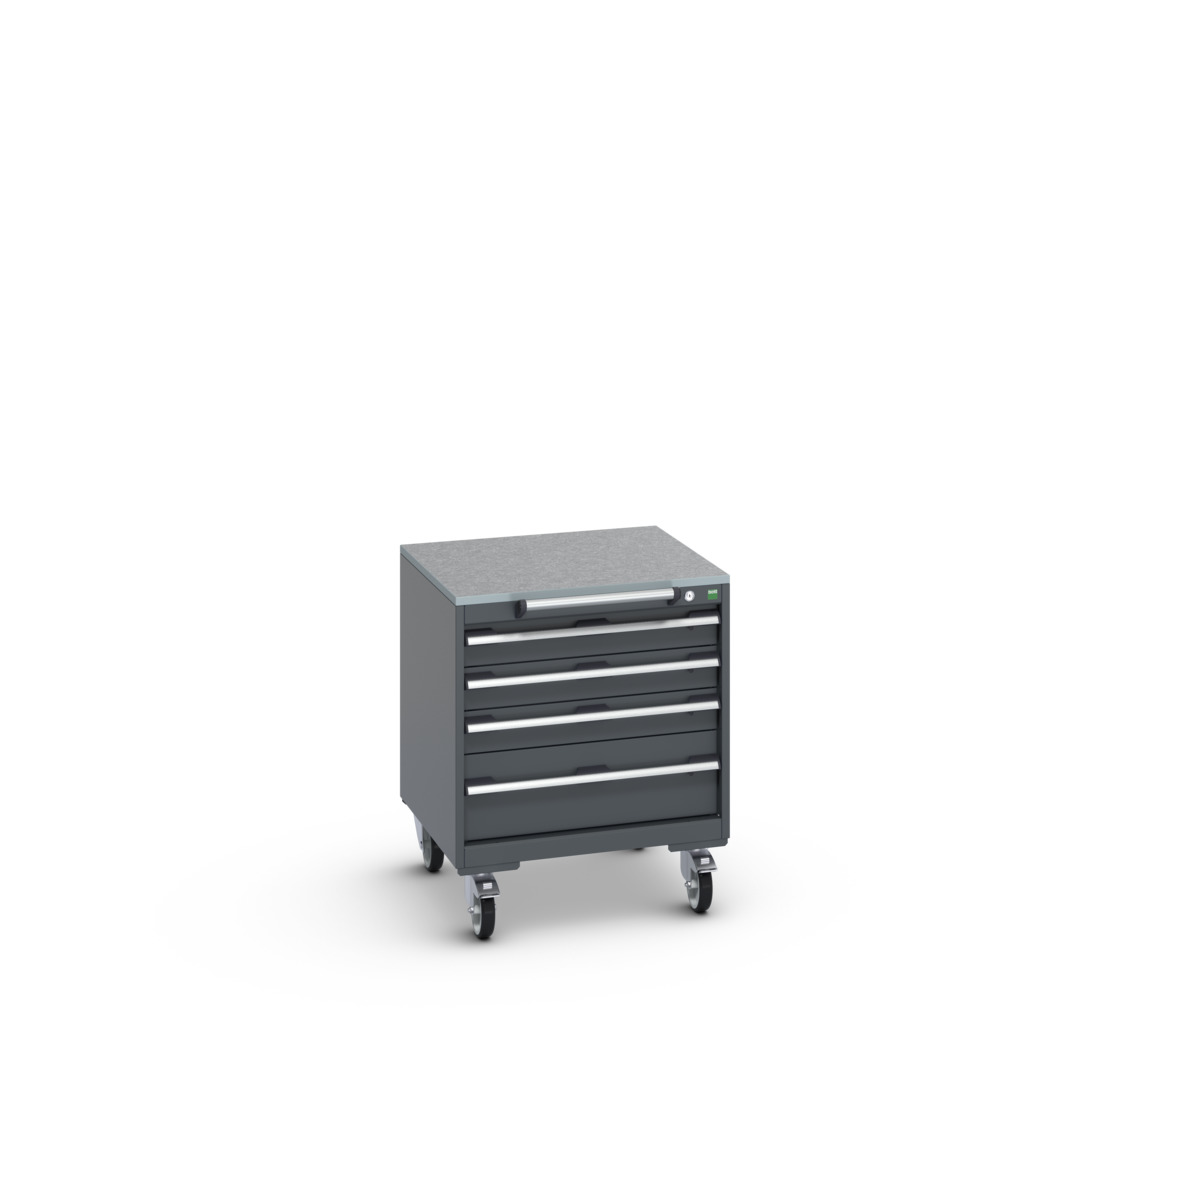 40402144.77V - cubio mobile cabinet